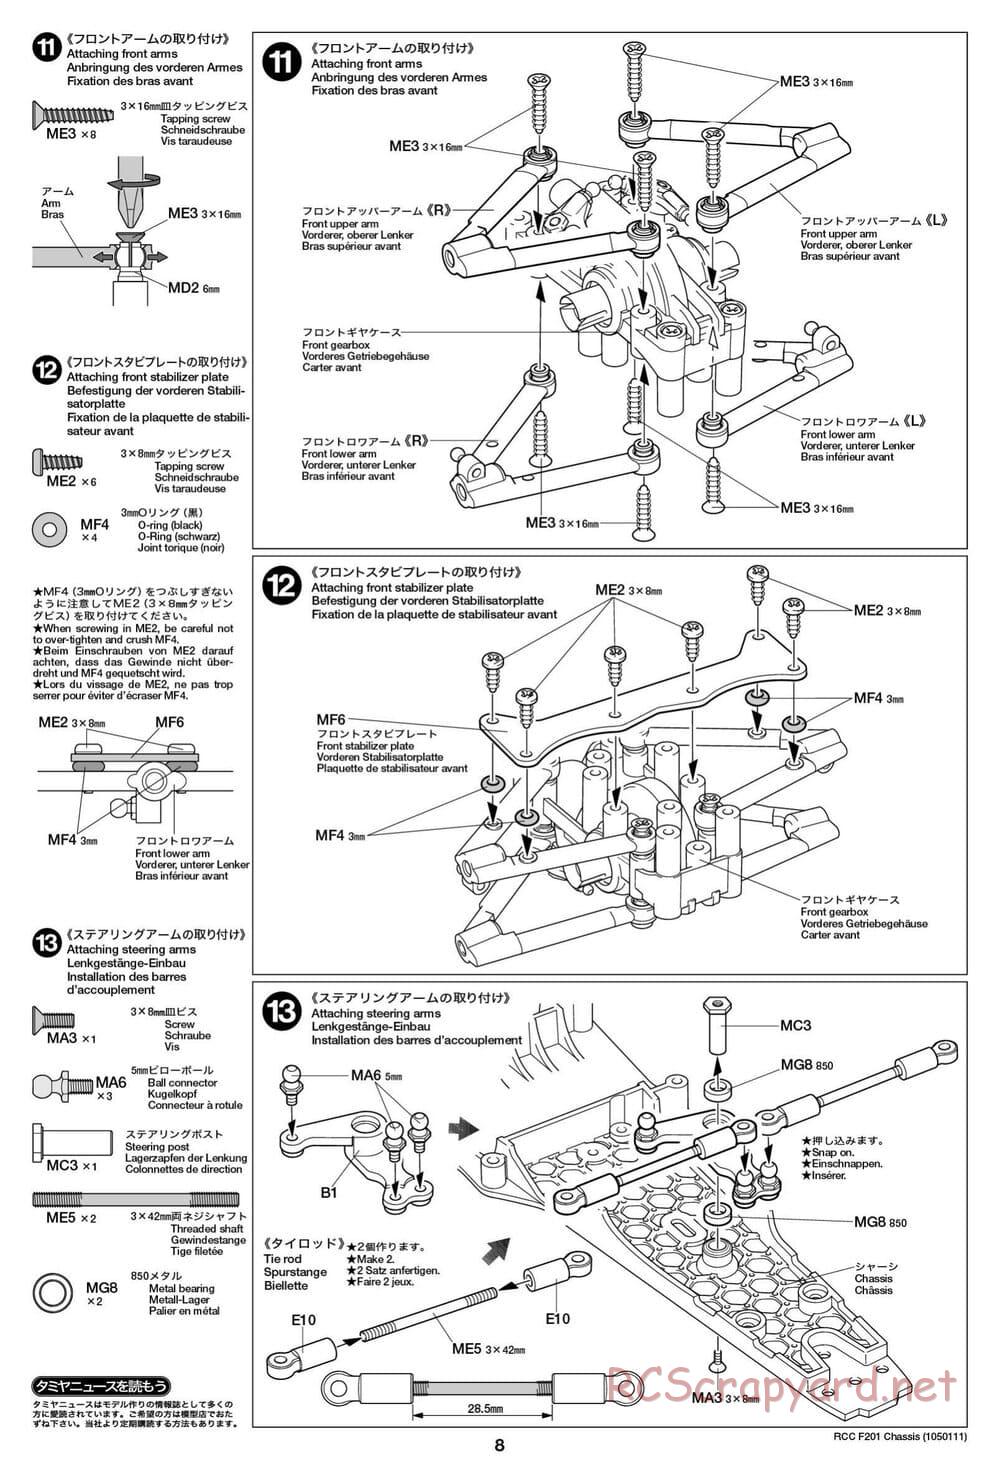 Tamiya - F201 Chassis - Manual - Page 8